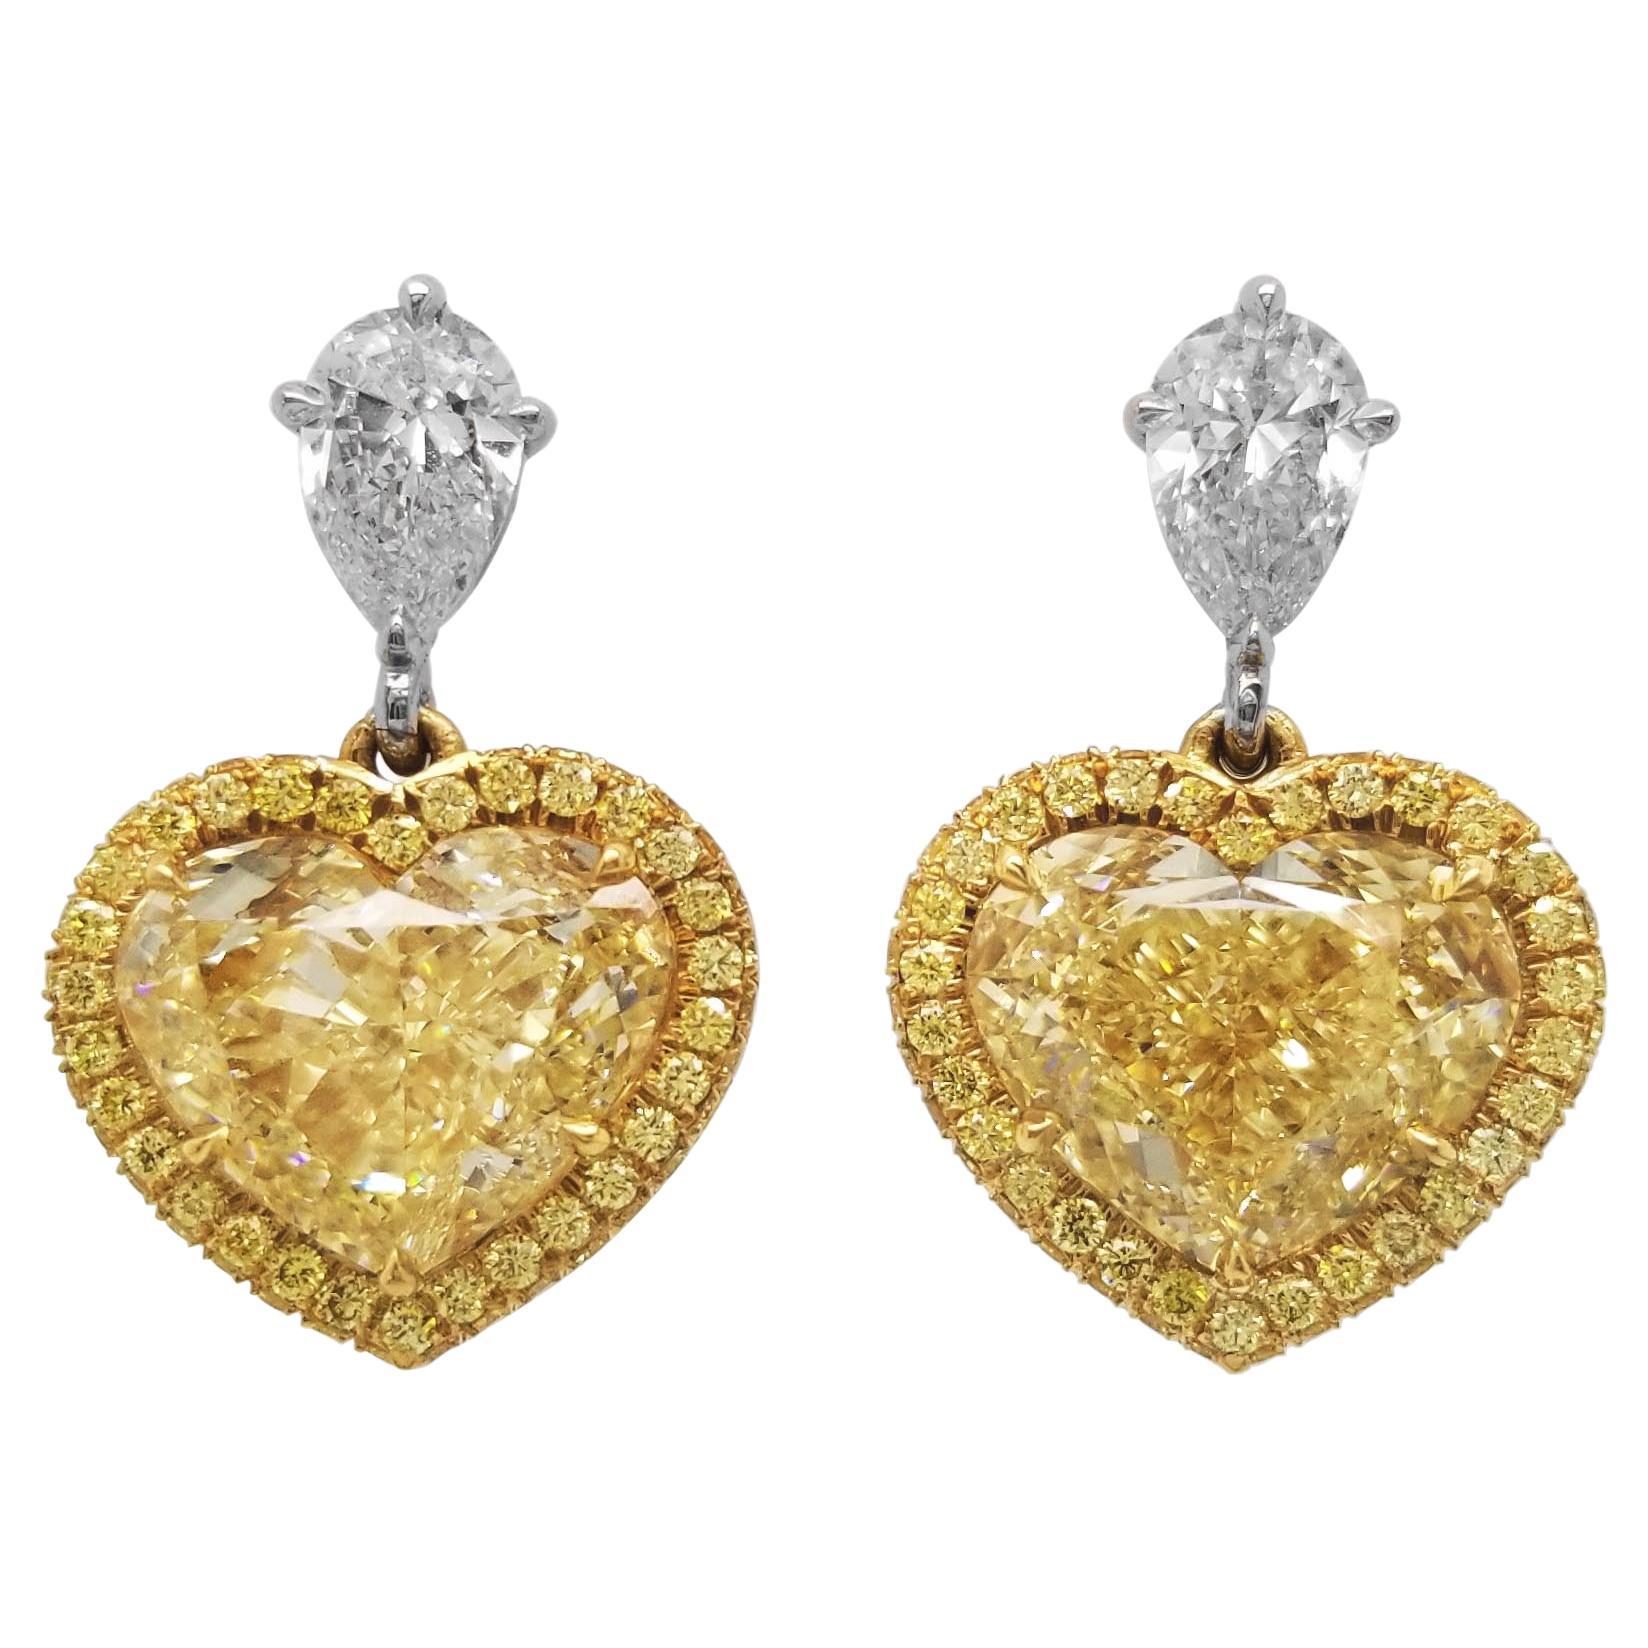 Scarselli Dangle Heart Earrings with 6 Carat Fancy Light Yellow Diamonds